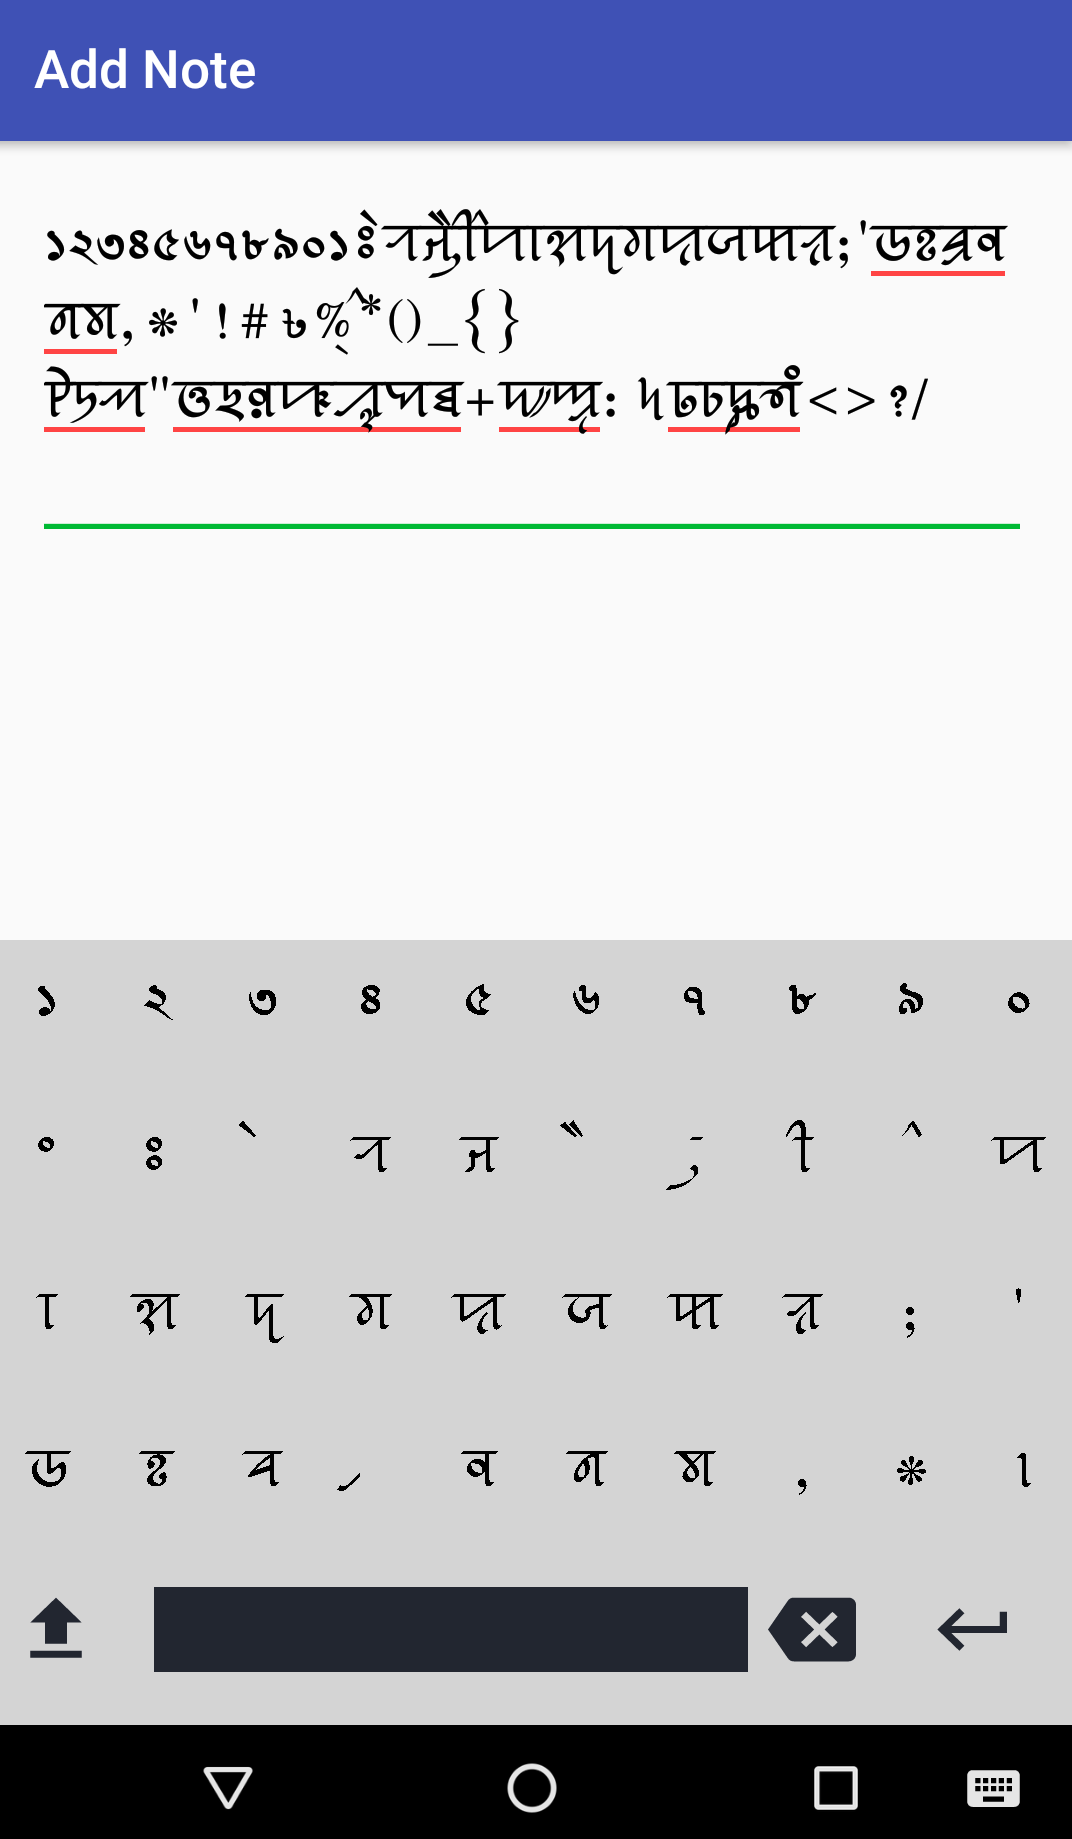 Android application Syloti Nagri Notes screenshort